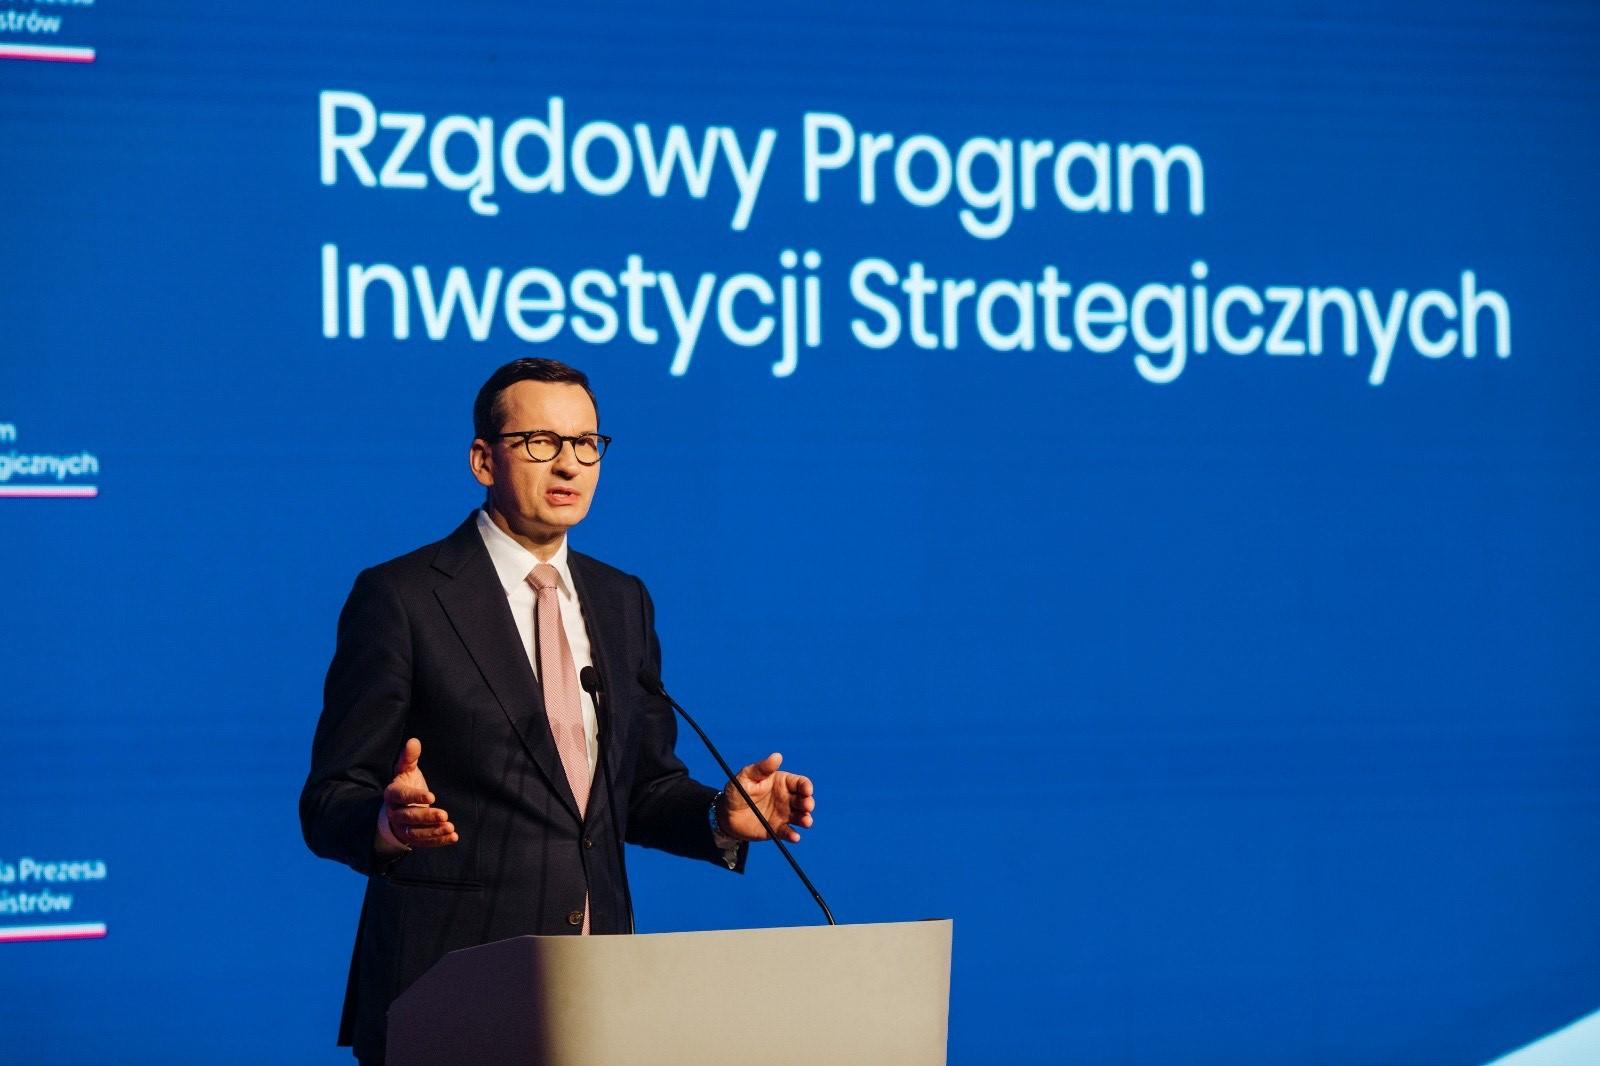 Premier Polski Mateusz Morawiecki w czarnym garniturze stoi na scenie Makowskiego Domu Kultury na tle dużego niebieskiego ekranu z napisem Rządowy Program Inwestycji Strategicznych